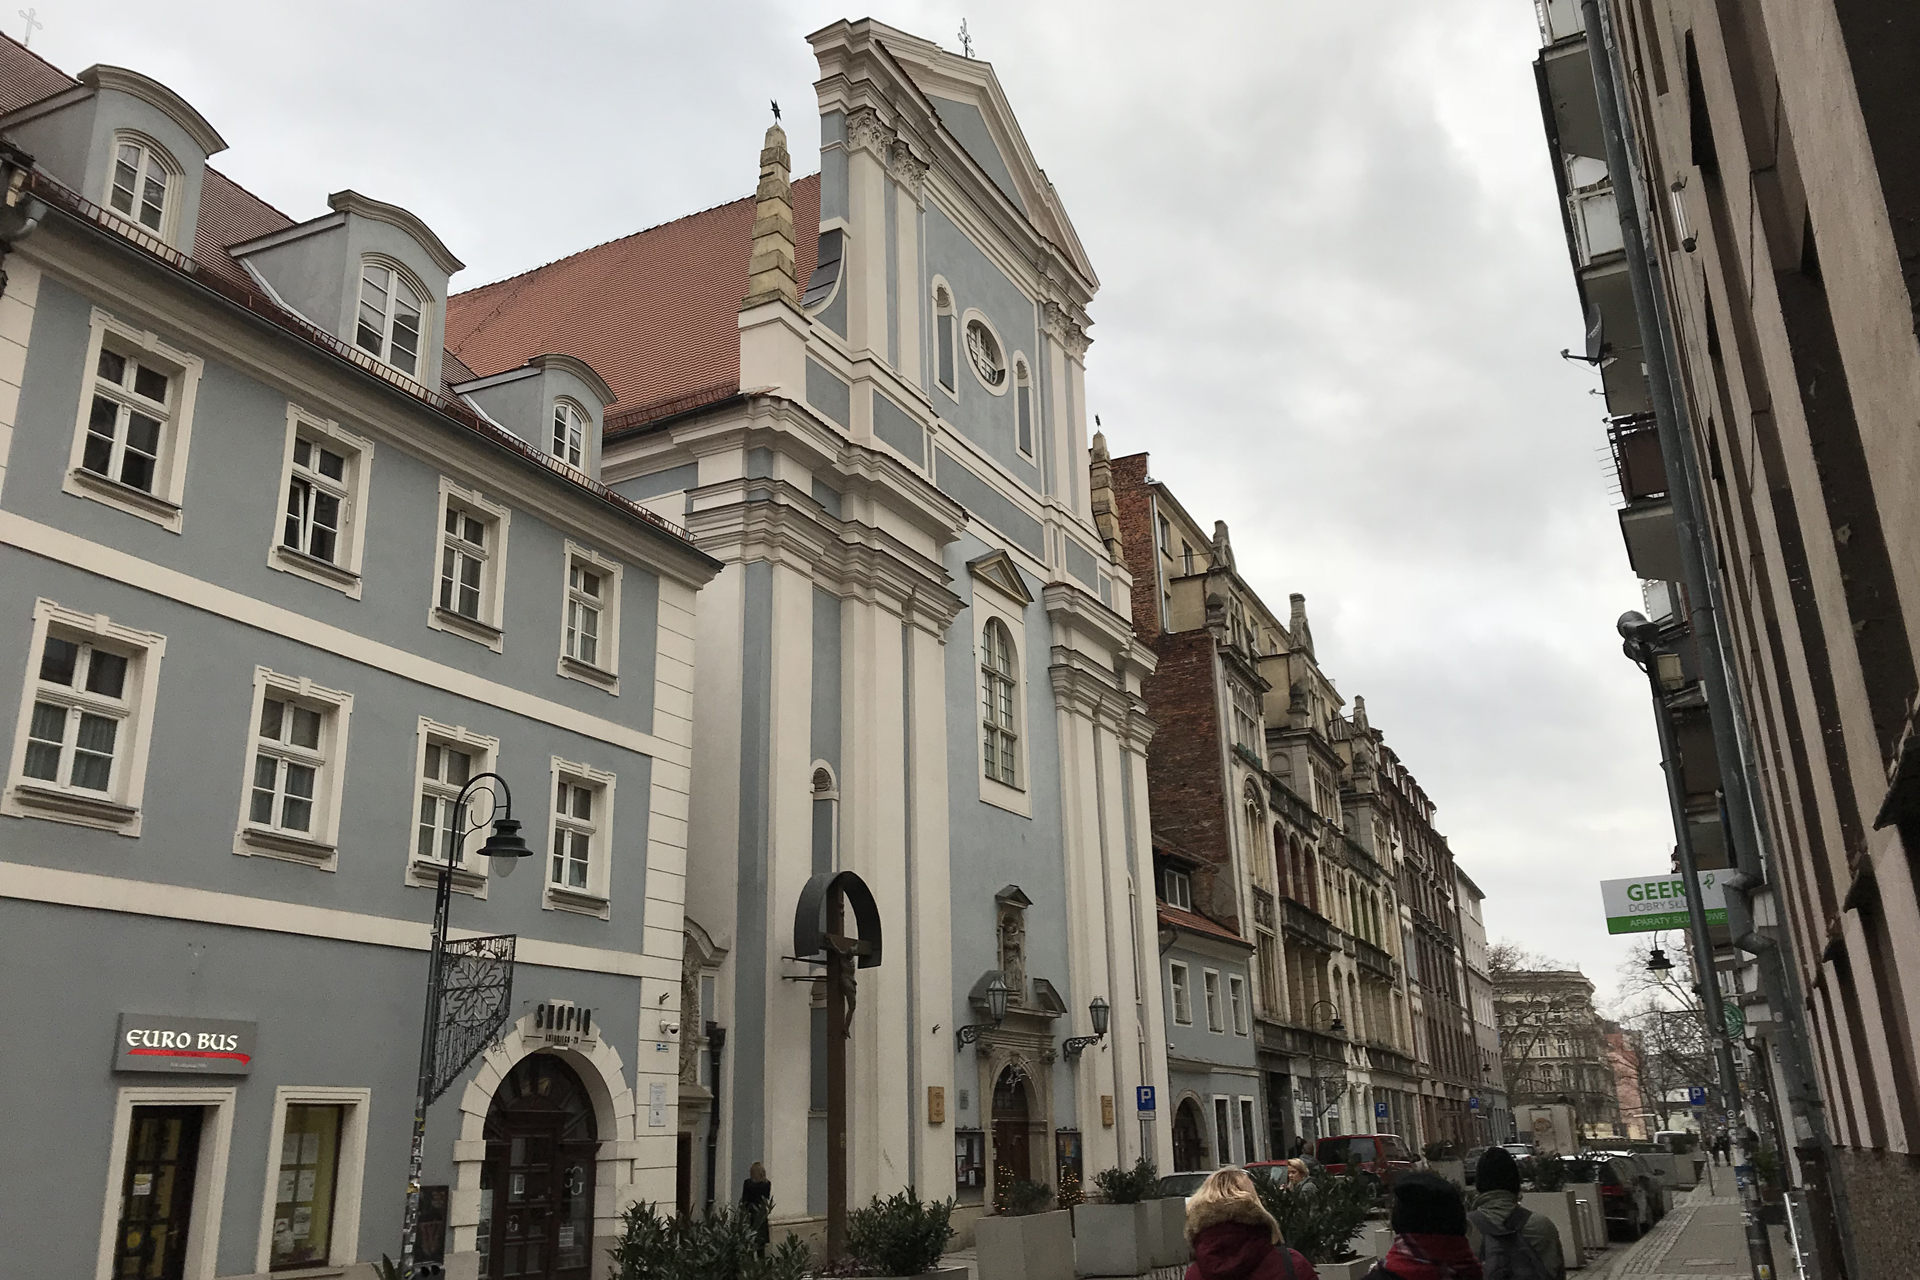 Im Jüdischen Viertel von Wroclaw. Links alles renoviert, rechts noch etwas älter.